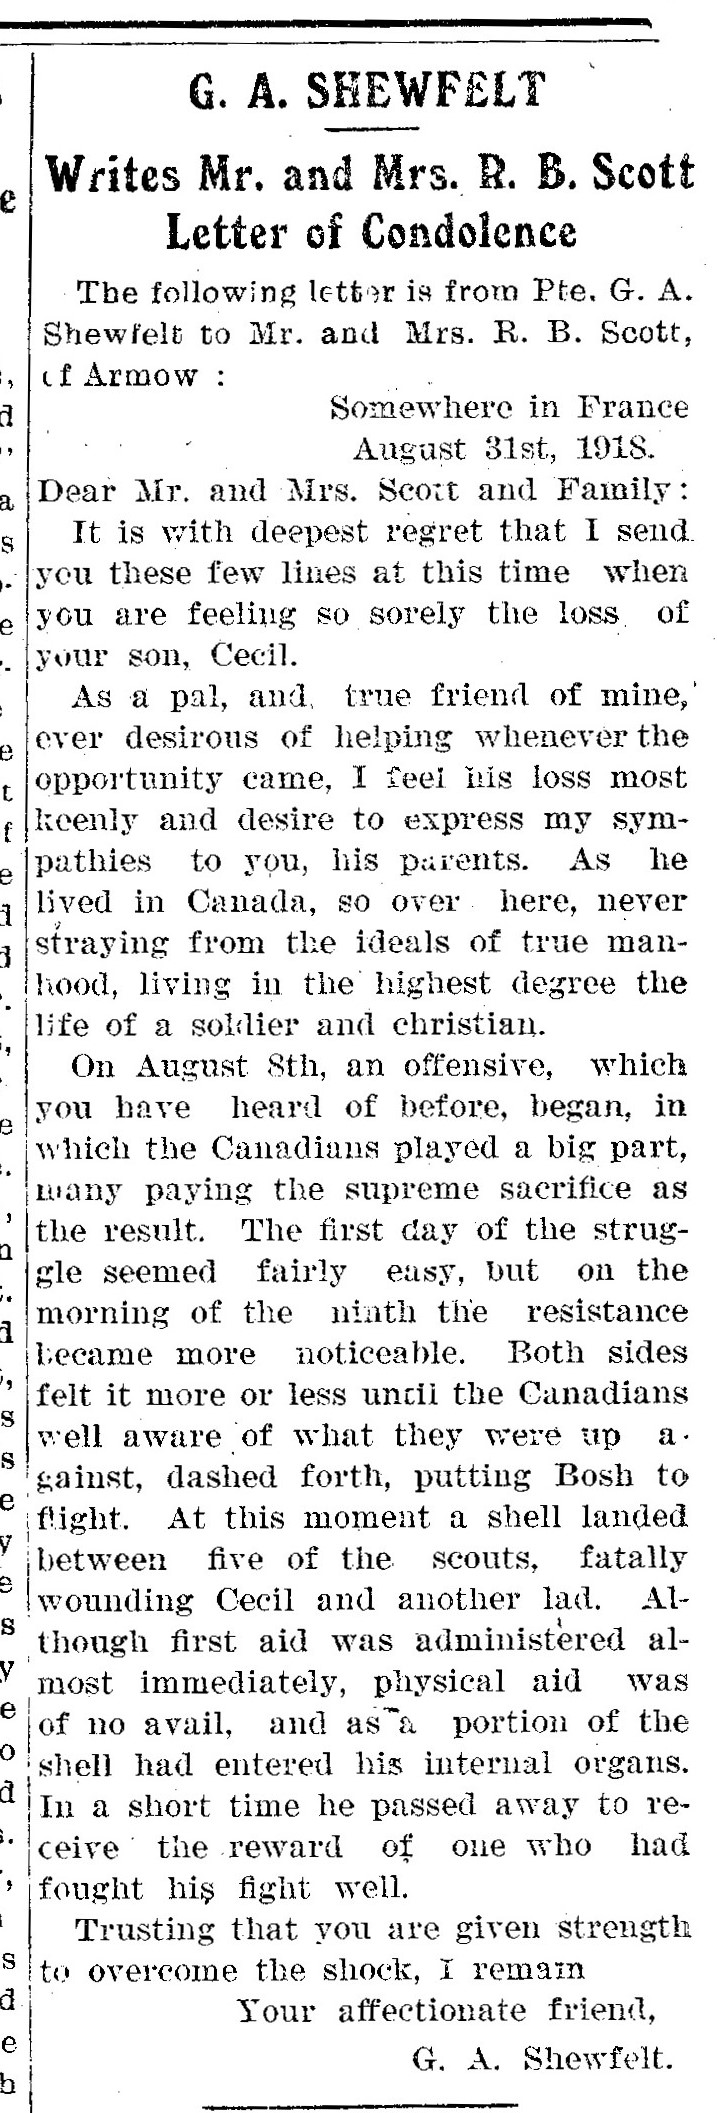 Kincardine Reporter, September 26, 1918